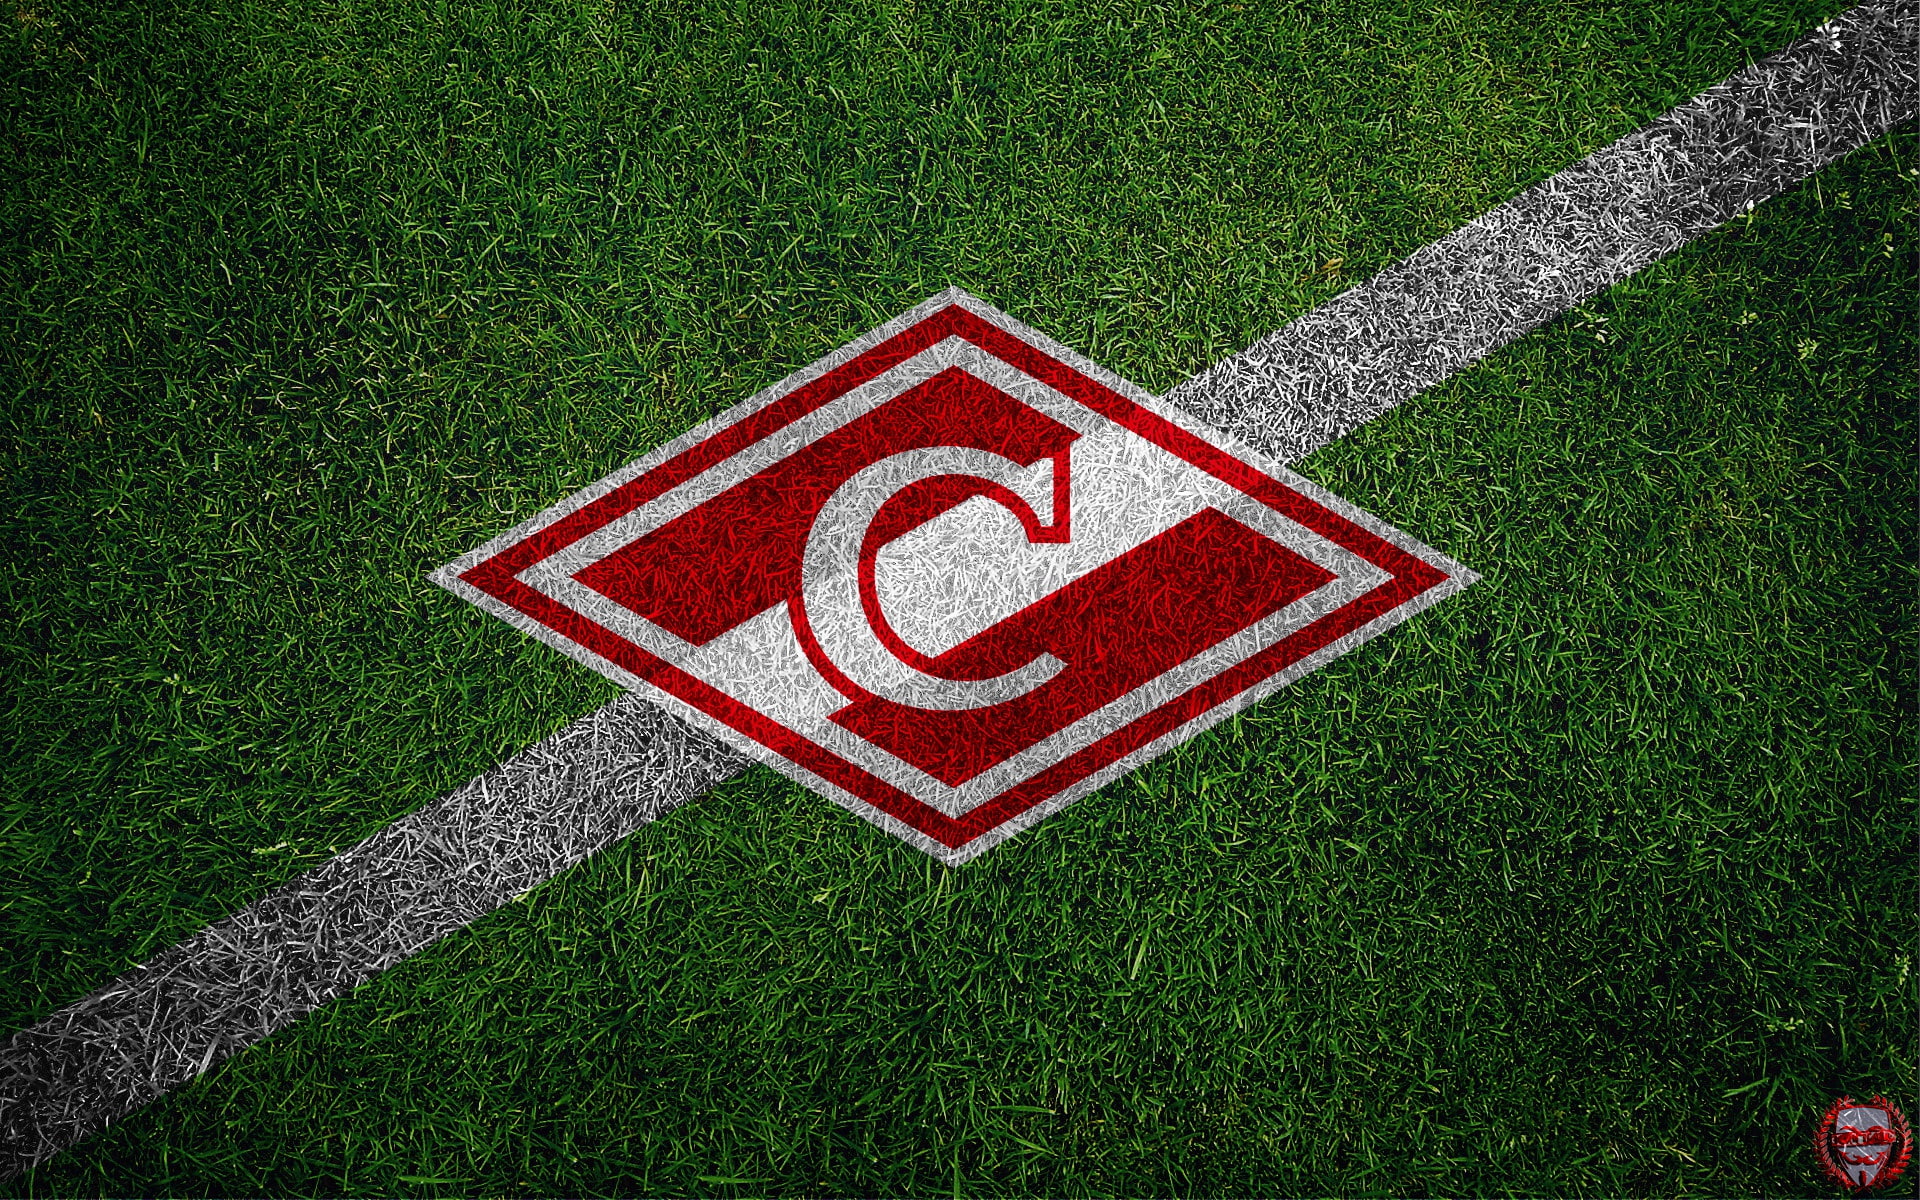 Grass, Sport, Logo, Football, Background, Top, Emblem, Russia